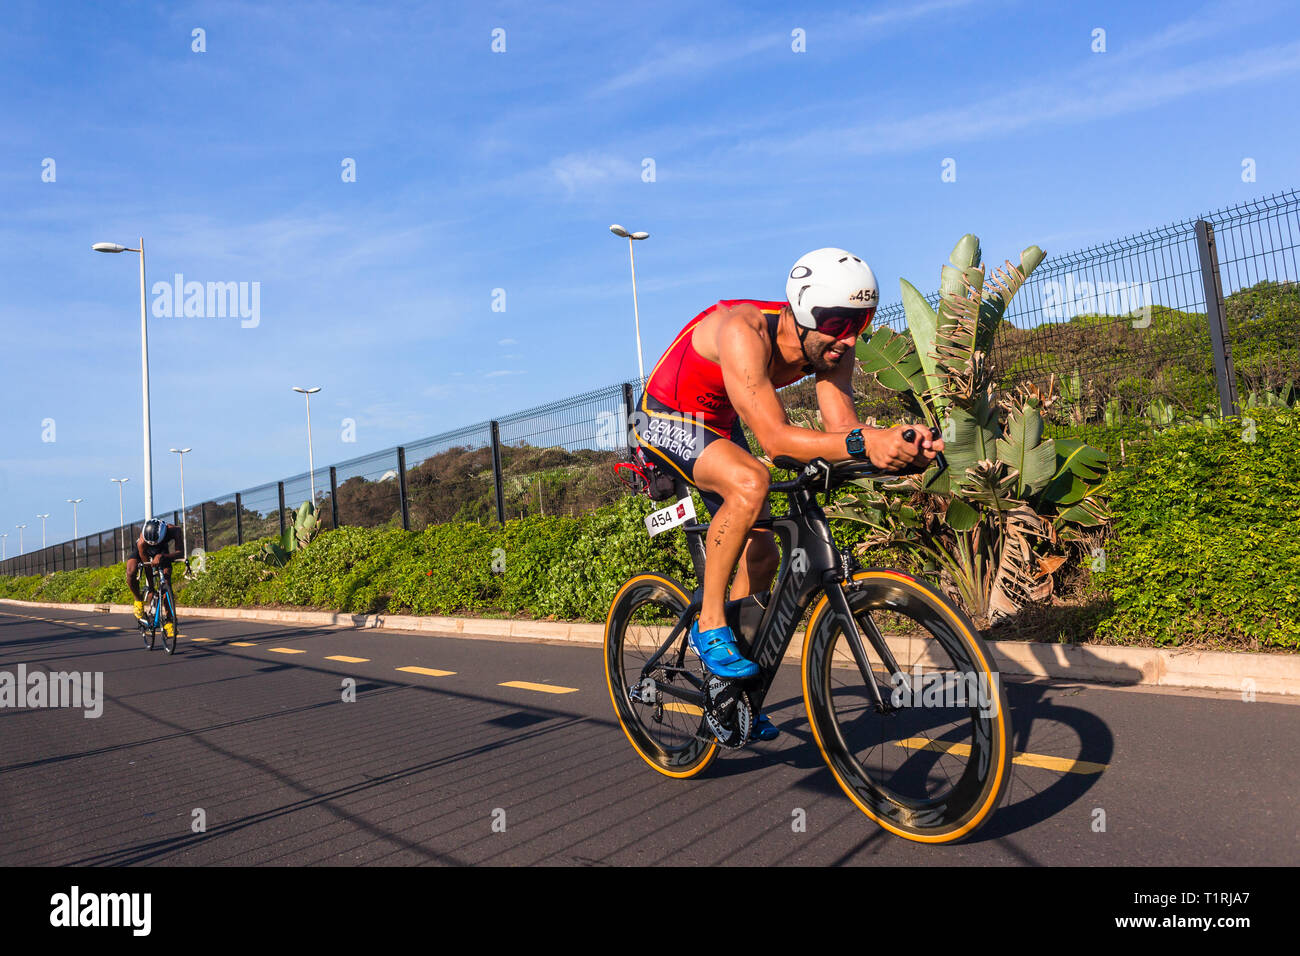 Triathlon nationalen Champs Durban, Südafrika - März 24, 2019: Athleten radfahren Action morgen Straße Kurs zweite Bein des triathlon Rennen. Stockfoto